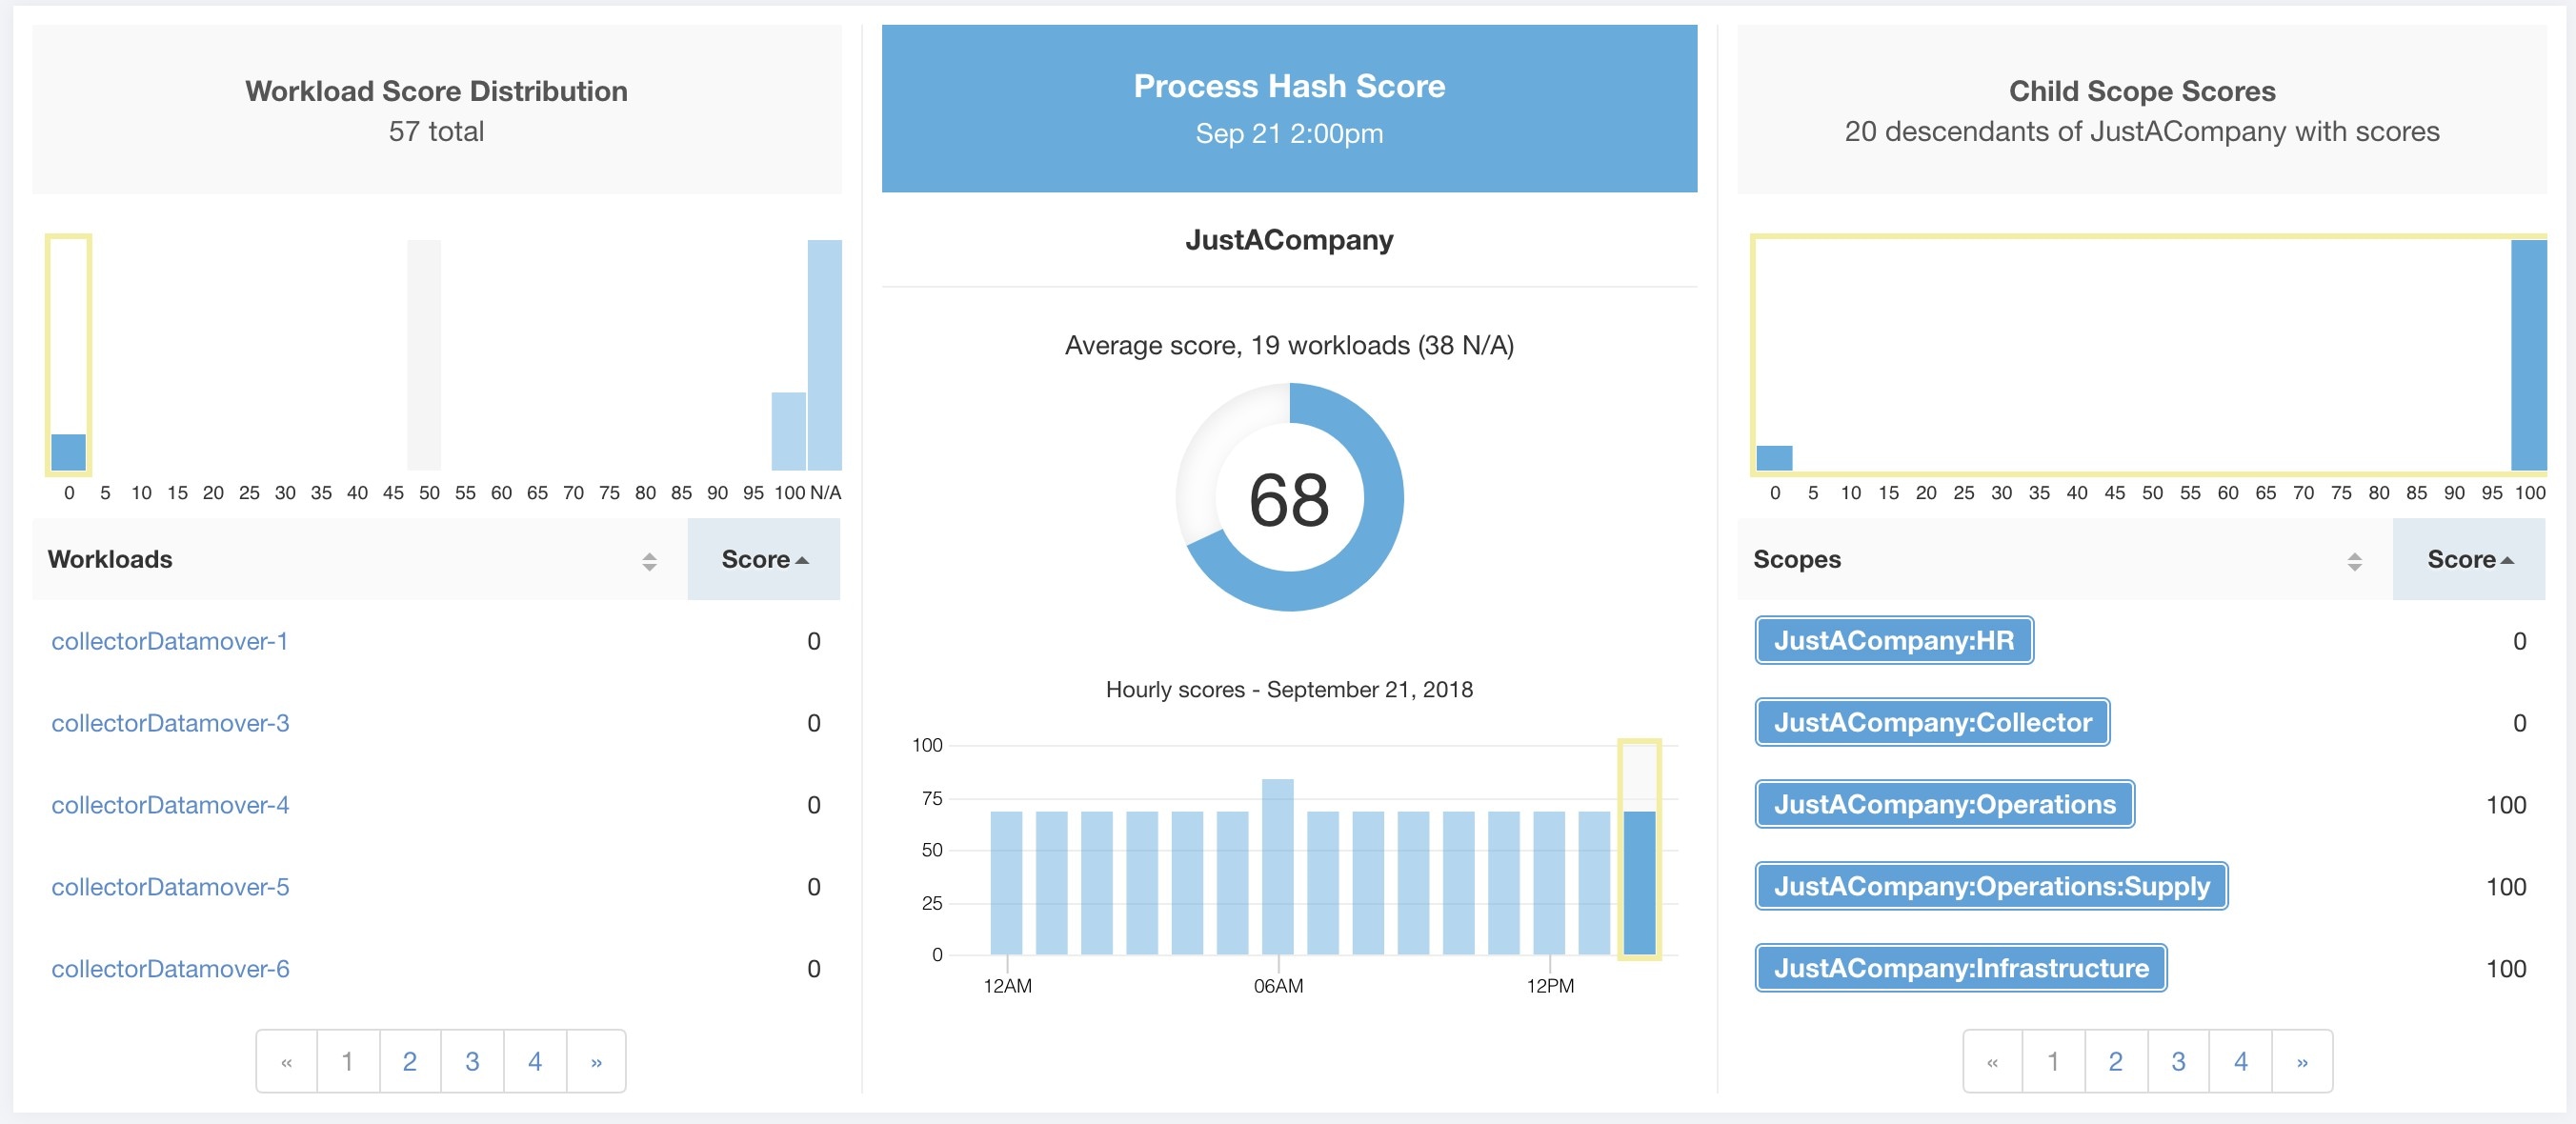 Process Hash Score Details